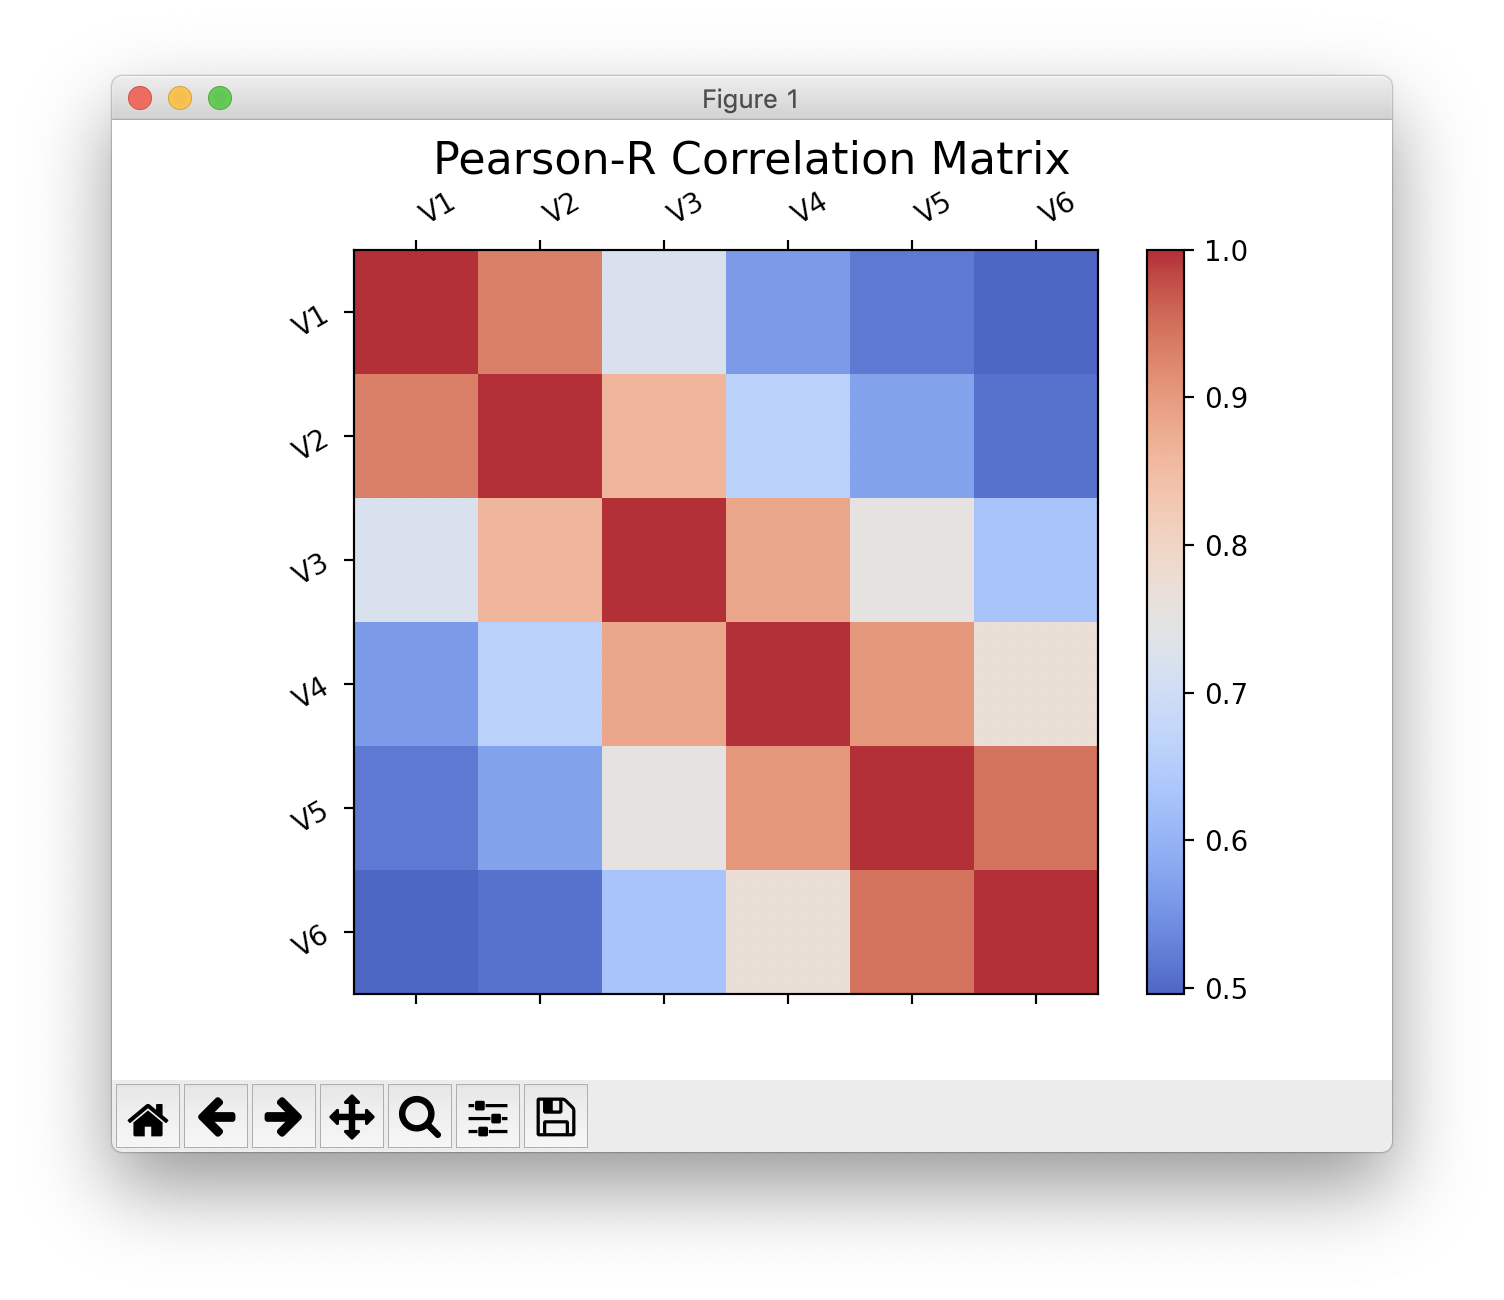 Pearson-R Correlation Matrix